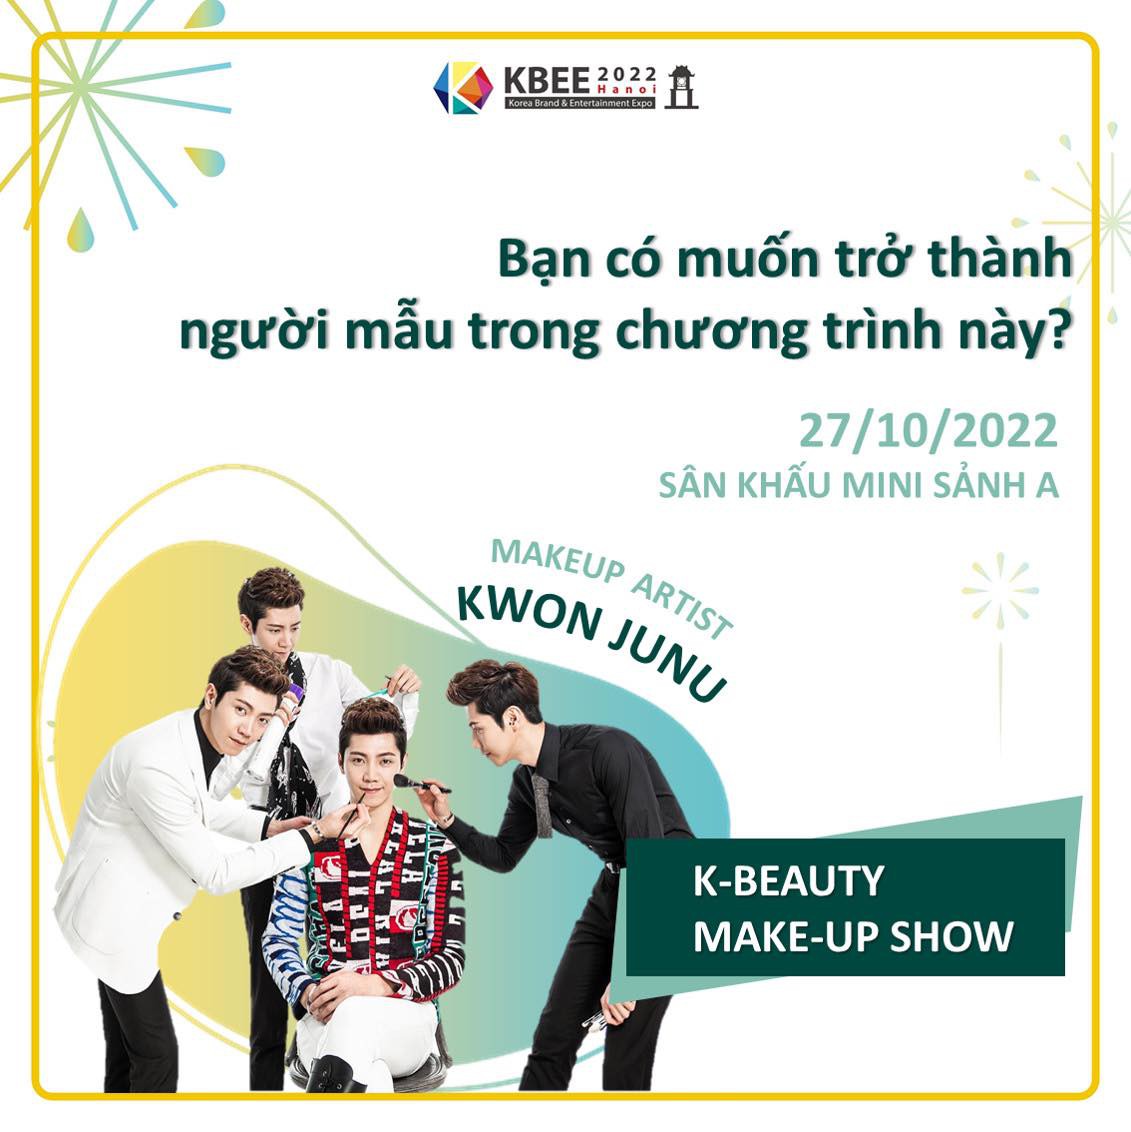 Đăng ký tham gia K-BEAUTY Makeup Show để được 